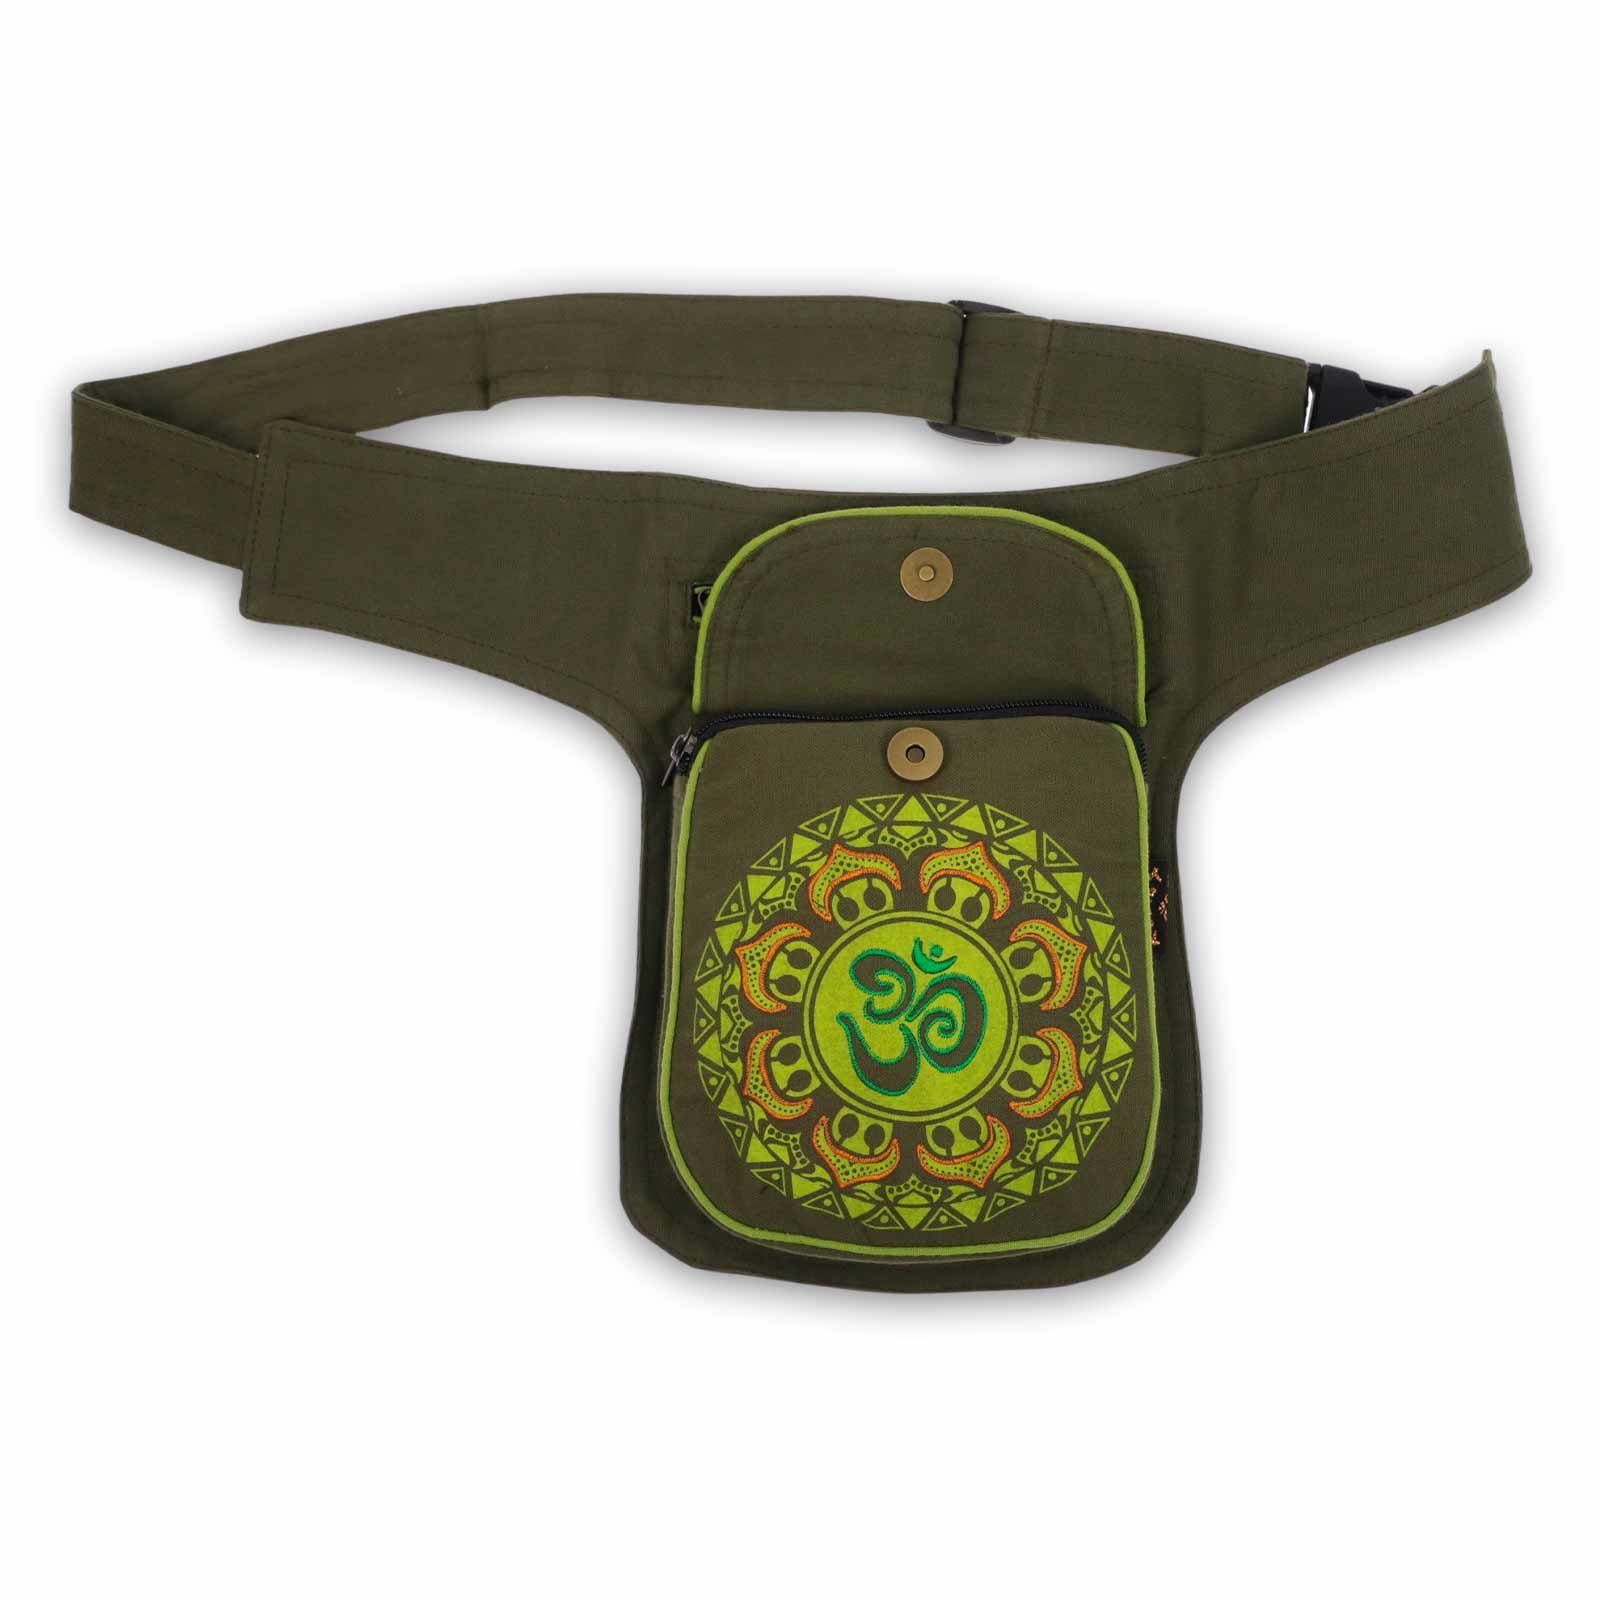 KUNST UND MAGIE Bauchtasche OM Gürteltasche Mandala Mandala Grün Sidebag Hüfttasche Bauchtasche